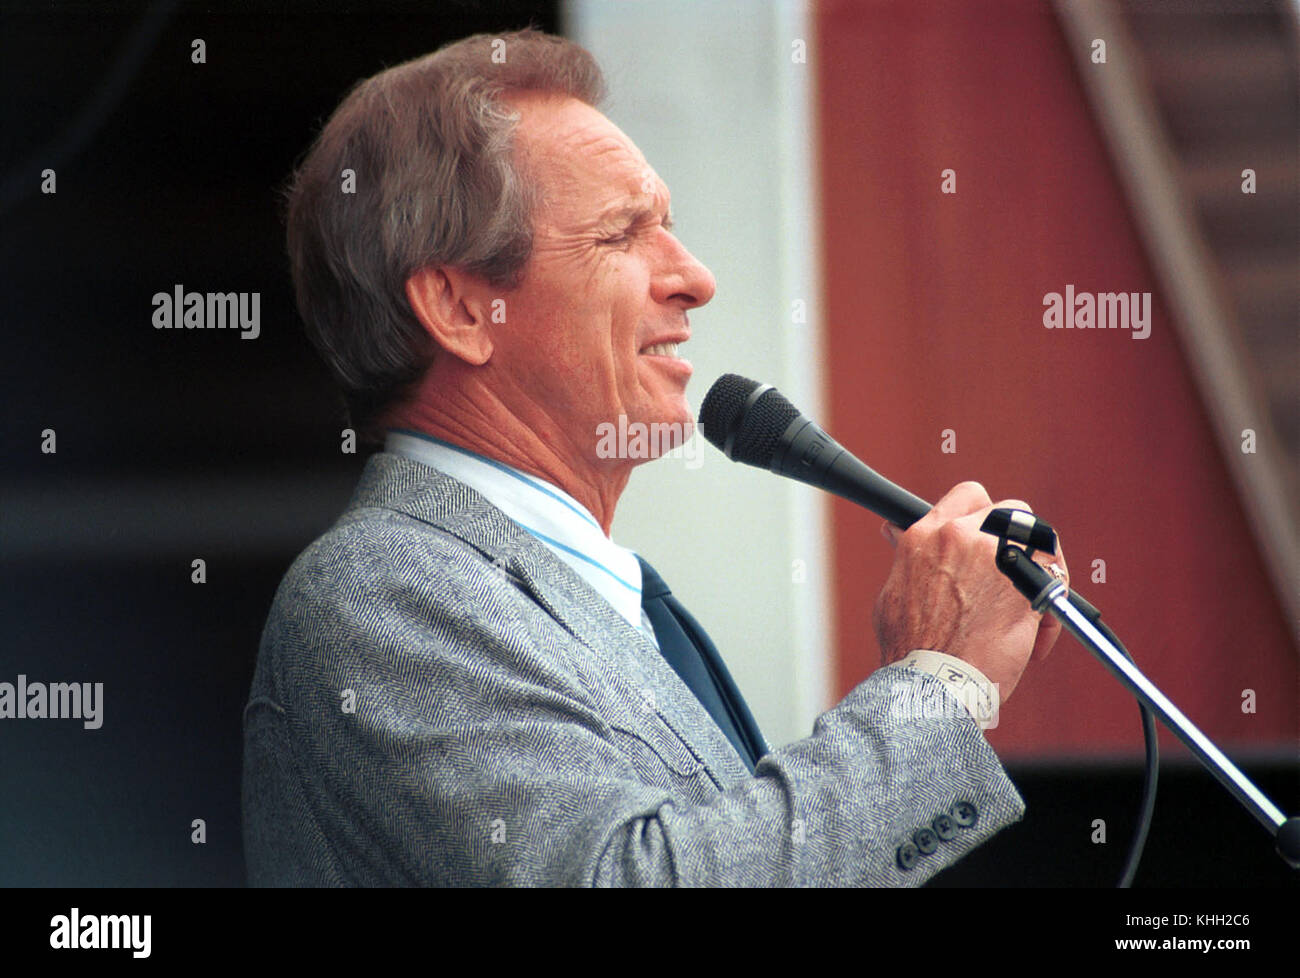 Pays interprète Mel Tillis est décédé le dimanche 19 novembre 2017, à l'âge de 85 ans. Tillis est montré ici à l'assemblée de la scène country music festival Jamboree, dans les collines, en 1989, à Saint Clairsville, Ohio, USA. Banque D'Images